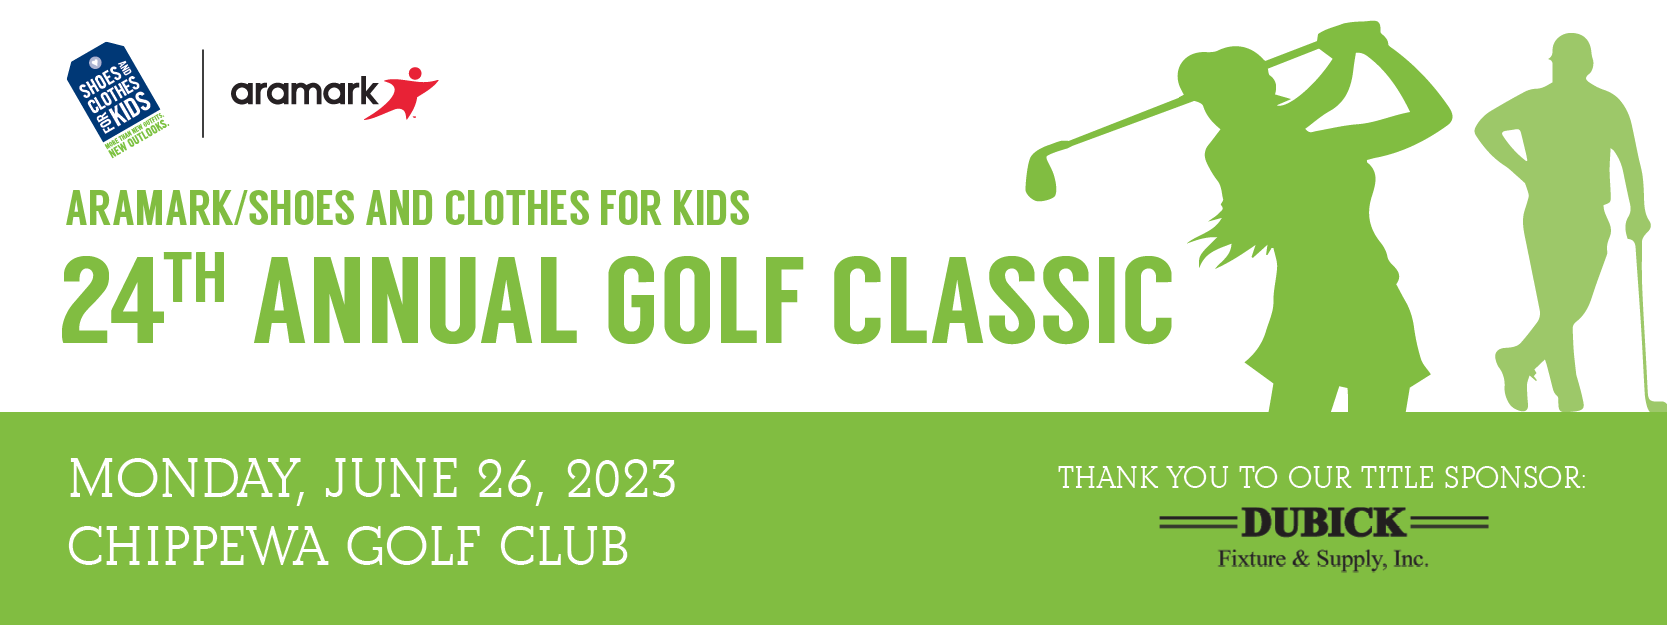 SC4K 24th Annual Golf Classic